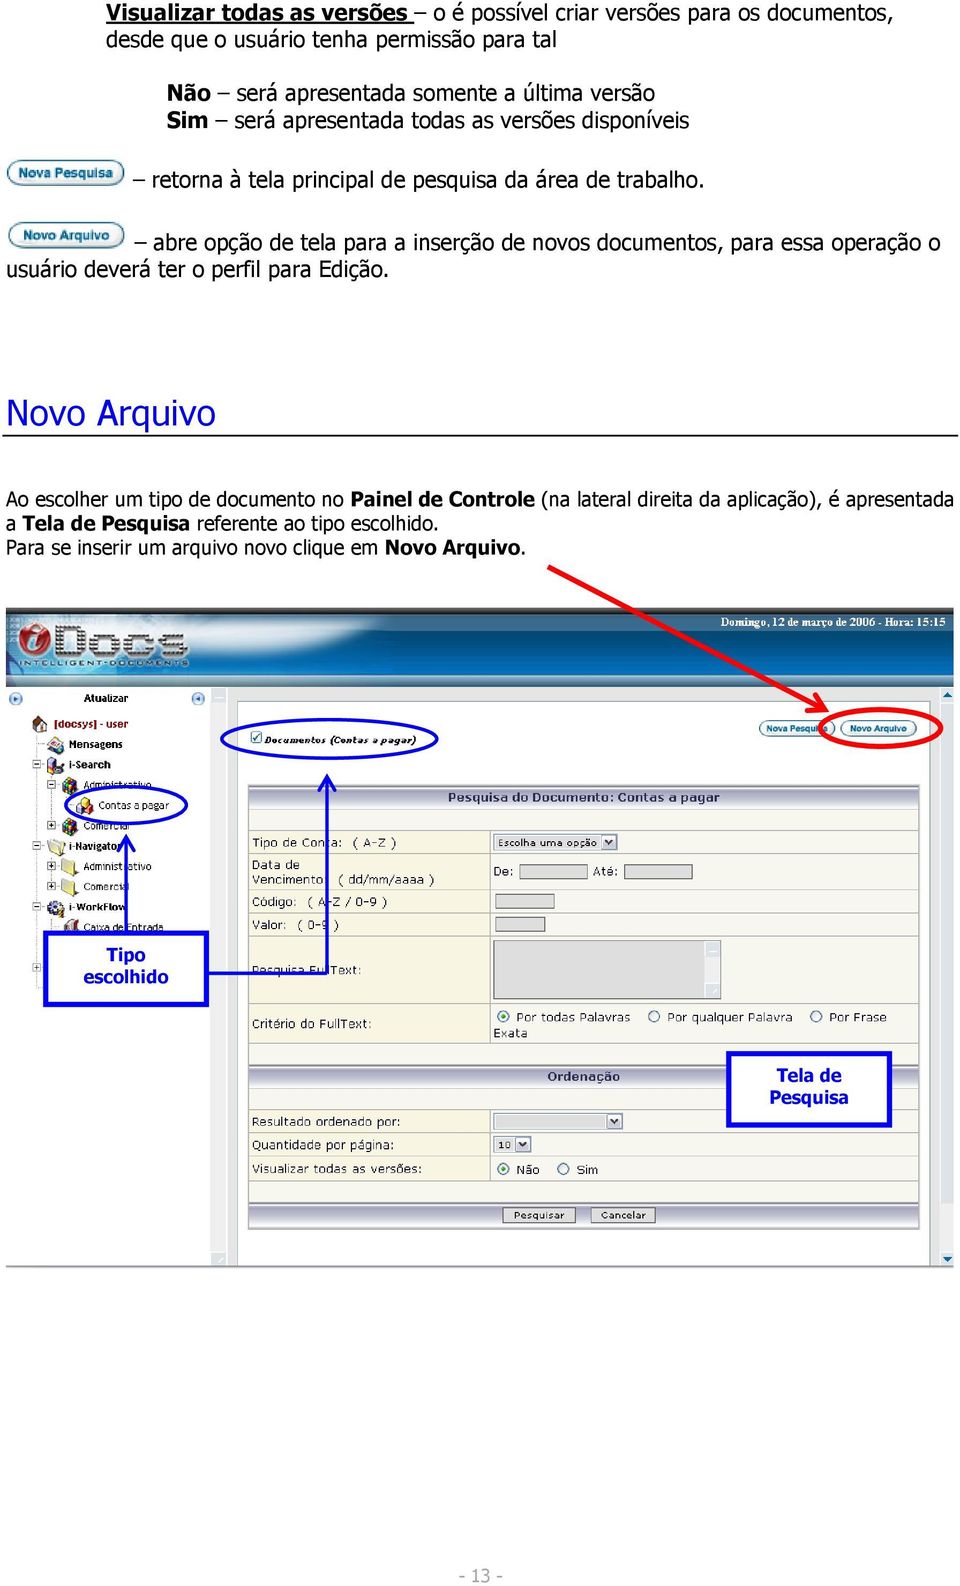 abre opção de tela para a inserção de novos documentos, para essa operação o usuário deverá ter o perfil para Edição.